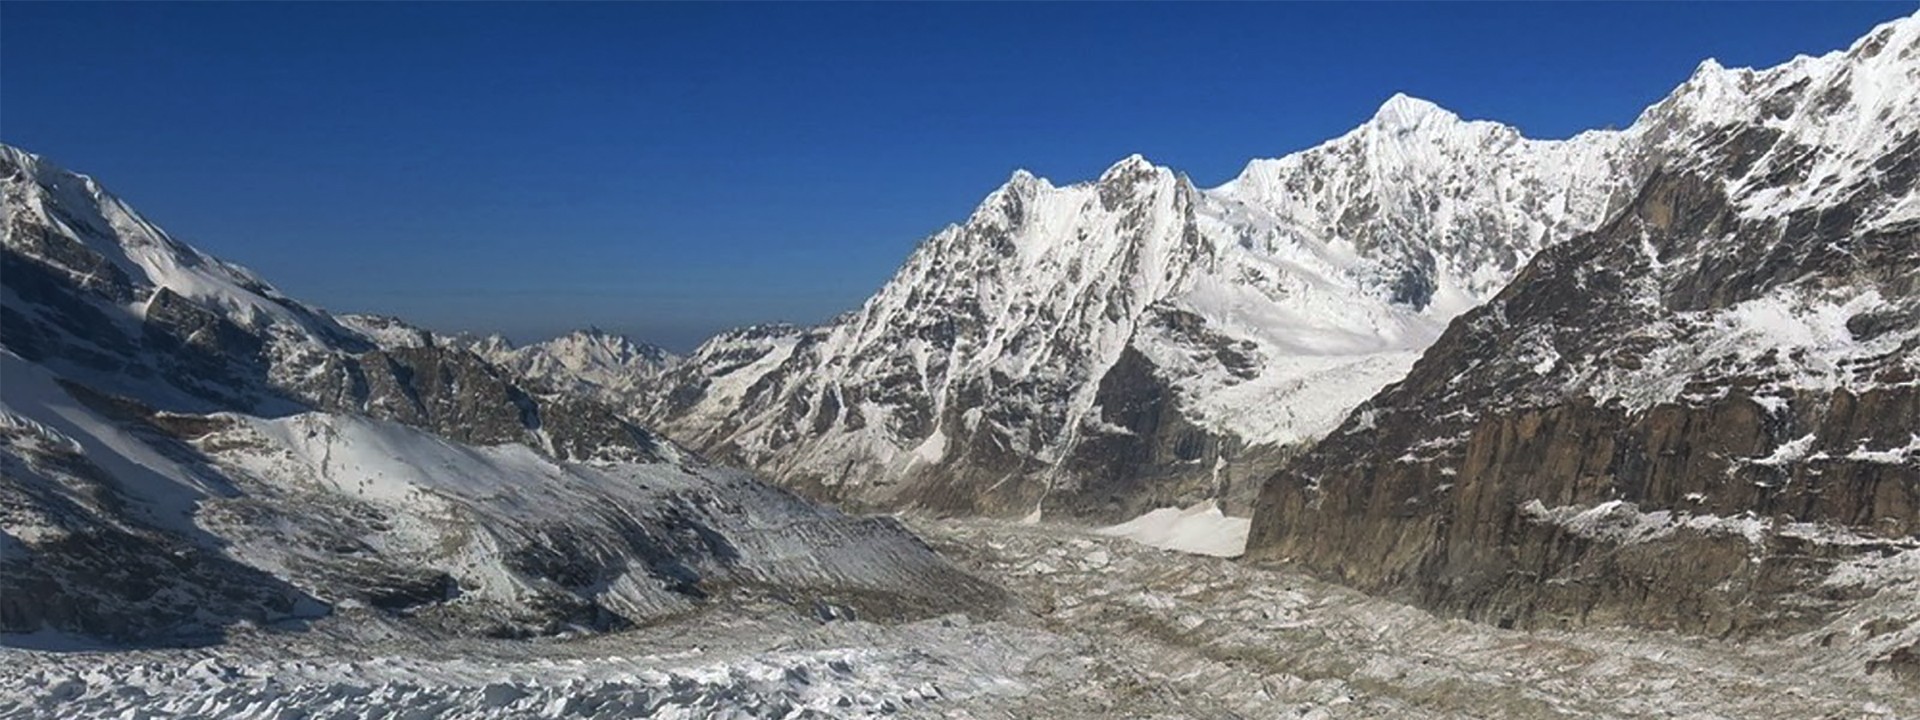 Mt. Kanchenjunga Summit view from Kanchenjunga Base Camp